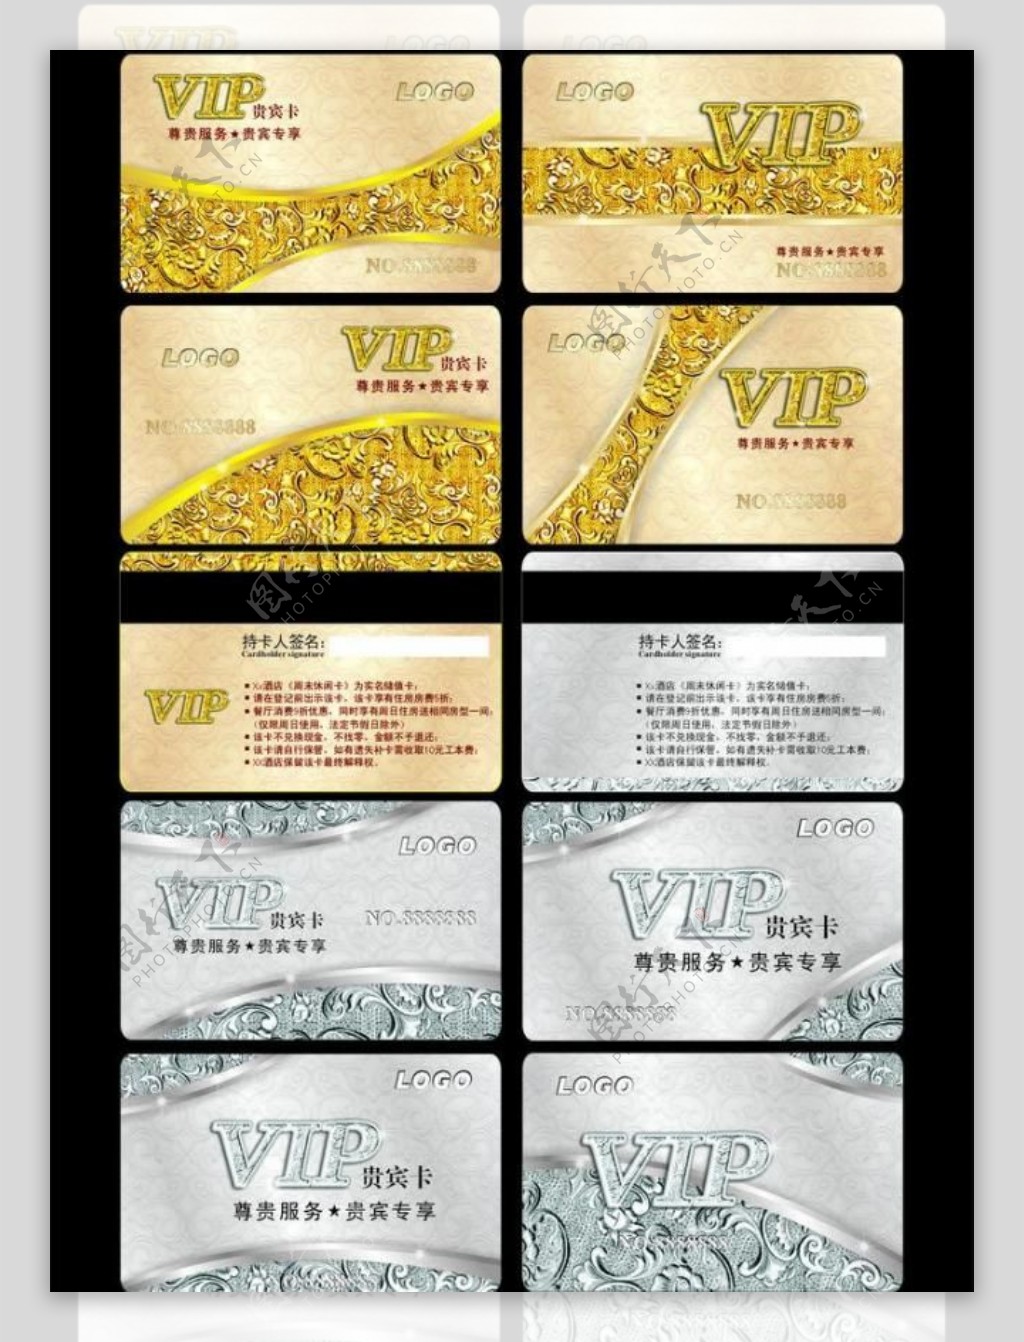 vip贵宾卡图片vip卡设计